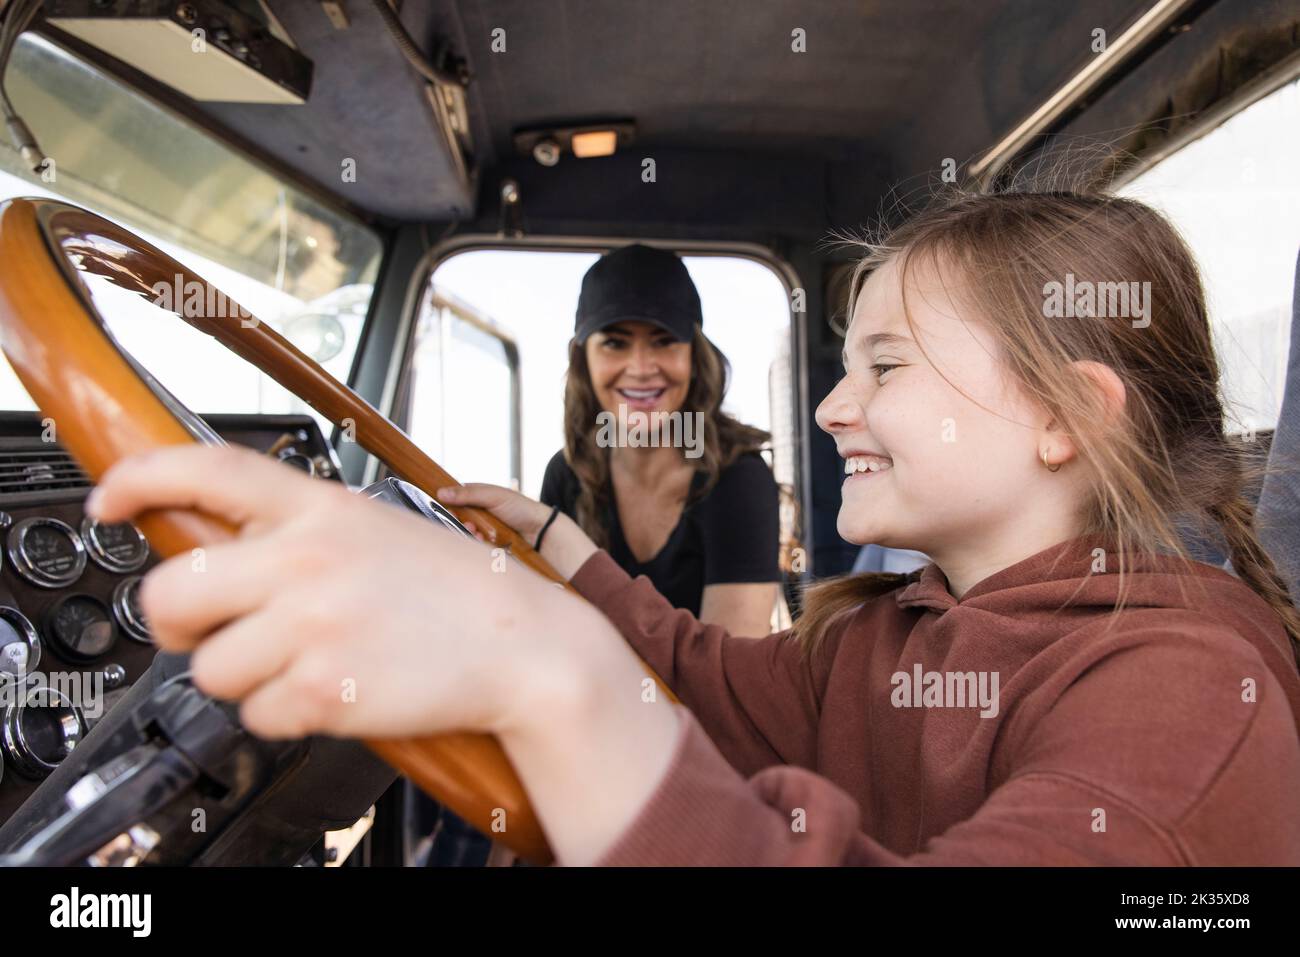 Chica feliz pretendiendo conducir semi camión Foto de stock